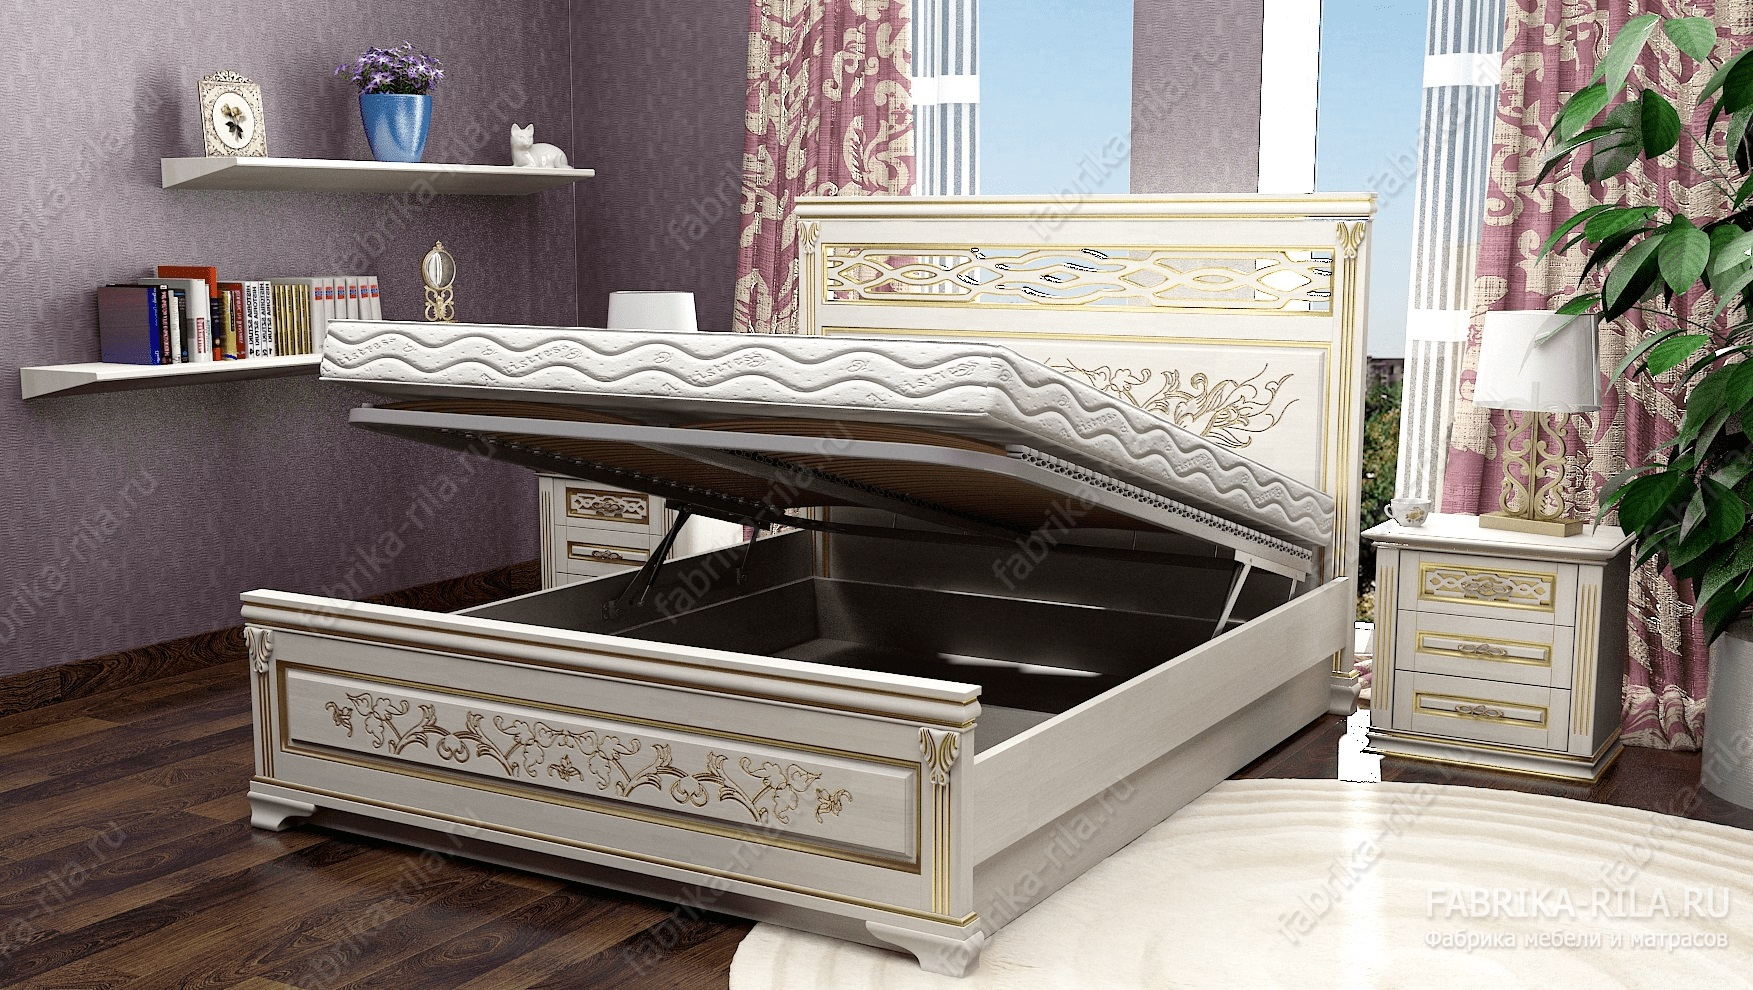 Кровать Lirоna 3 — 140x200 см. из сосны